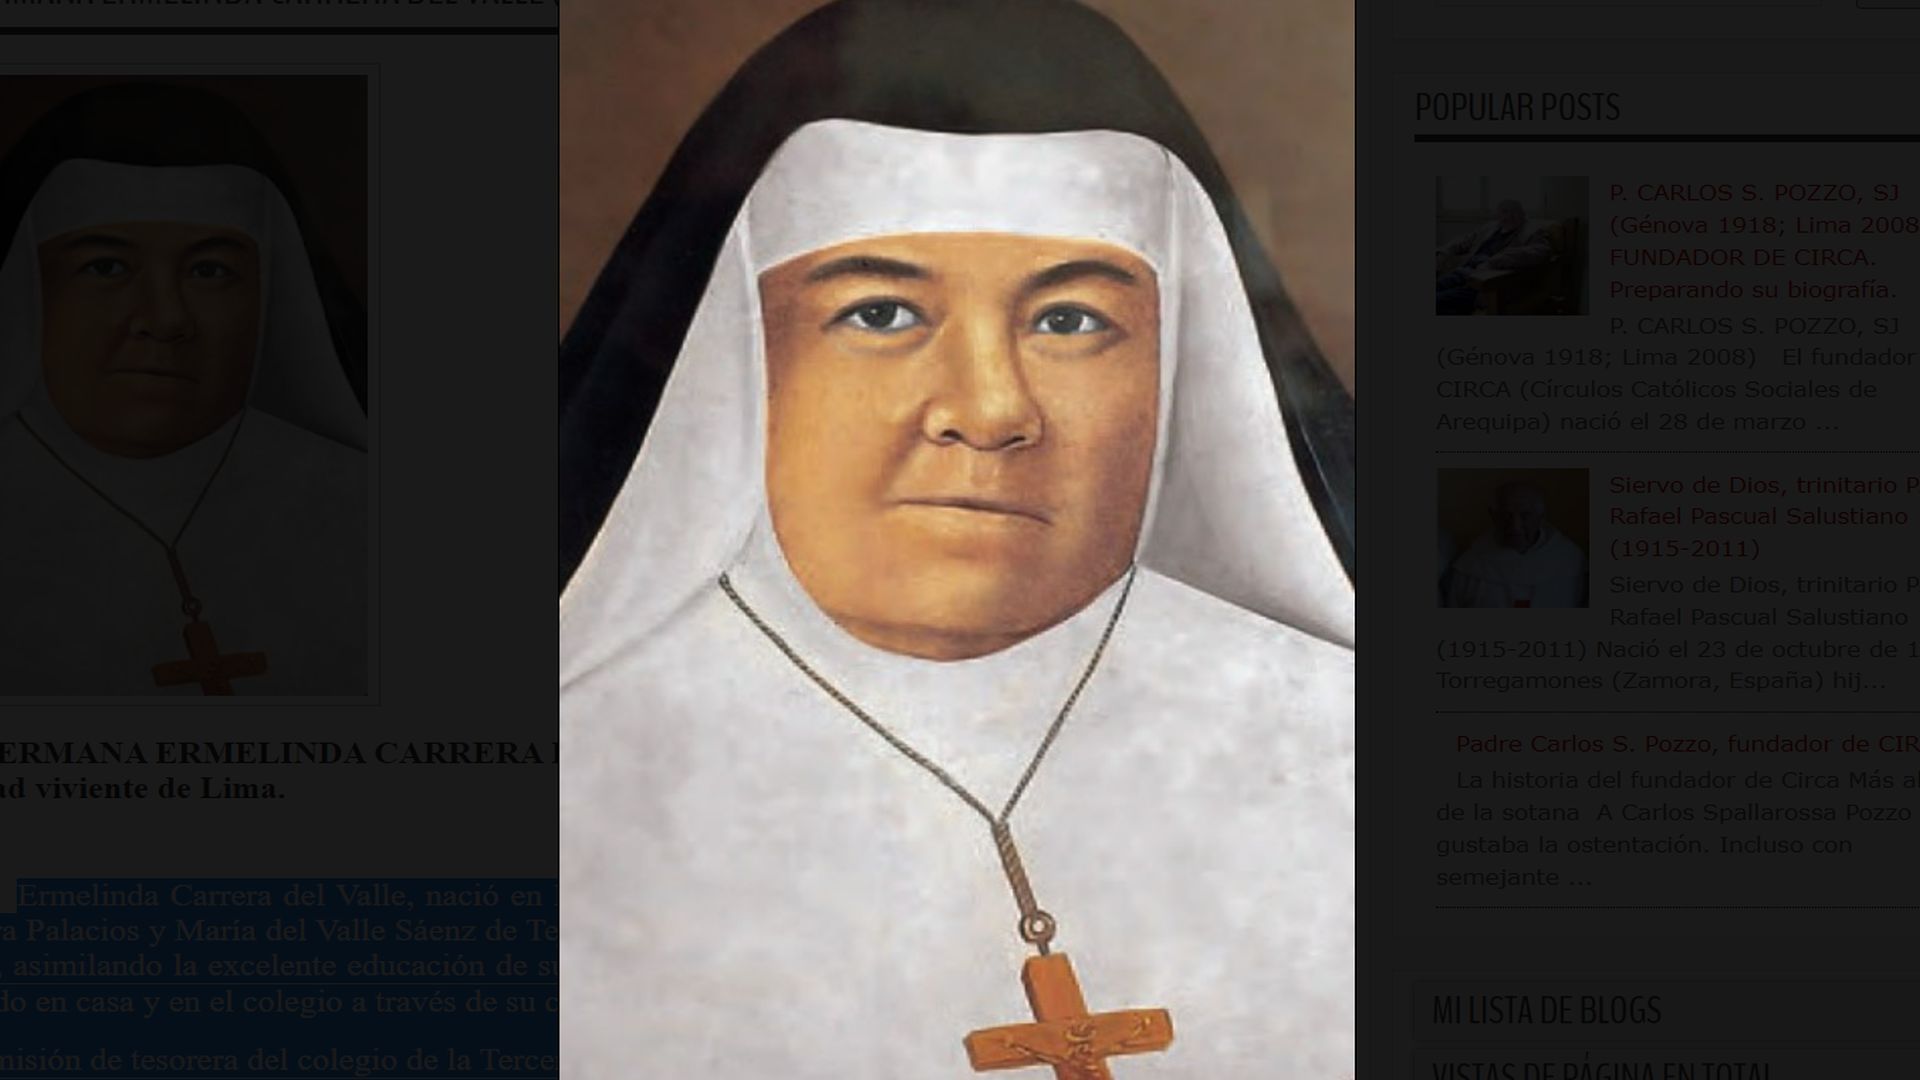 Sister Ermelinda Carrera (Christian Peru)